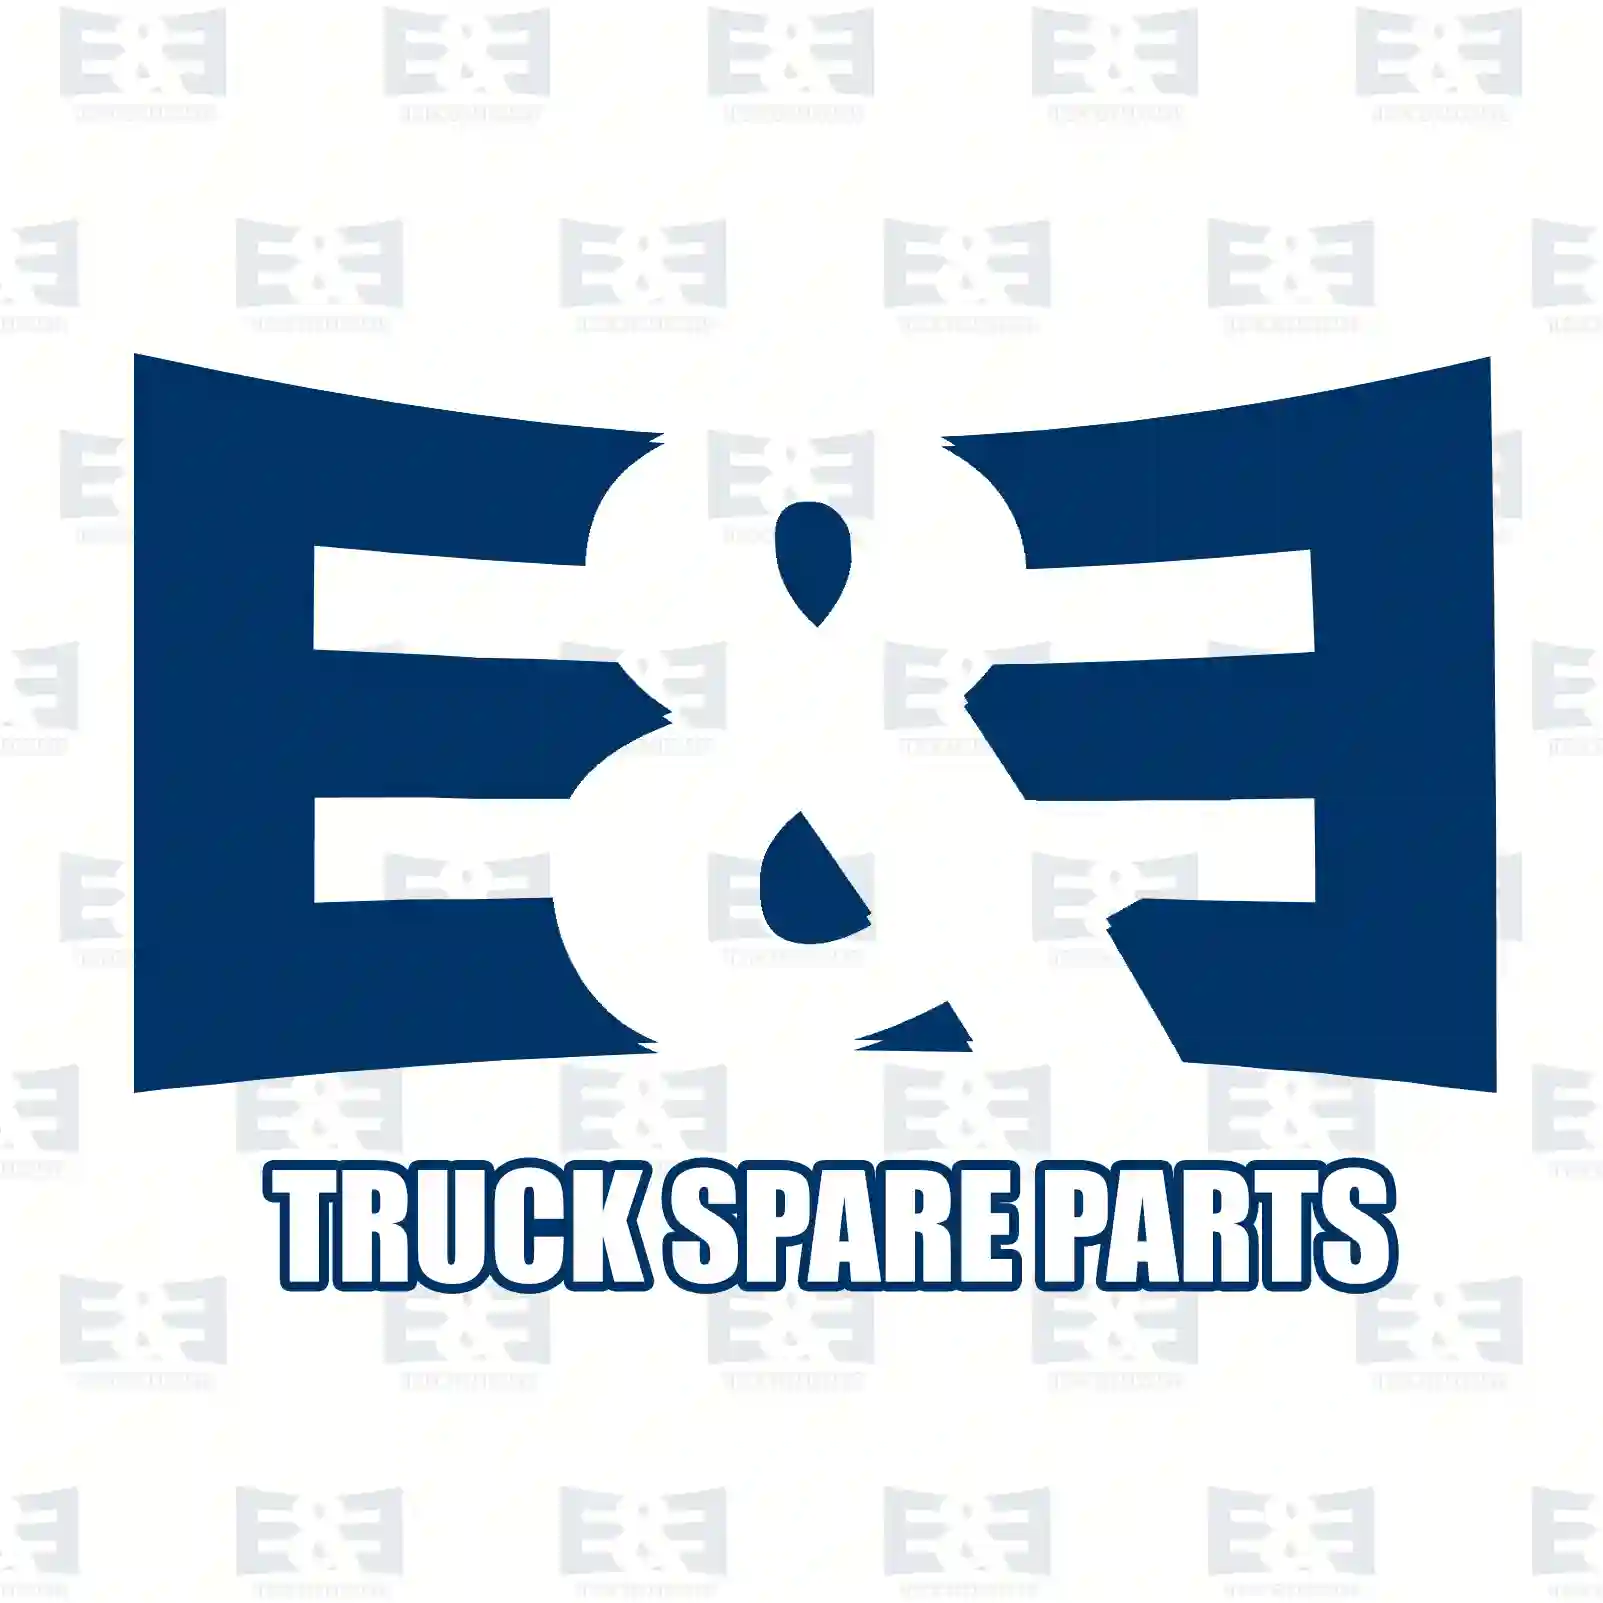 Fuse, 2E2298084, 000000006614, ZG20442-0008 ||  2E2298084 E&E Truck Spare Parts | Truck Spare Parts, Auotomotive Spare Parts Fuse, 2E2298084, 000000006614, ZG20442-0008 ||  2E2298084 E&E Truck Spare Parts | Truck Spare Parts, Auotomotive Spare Parts